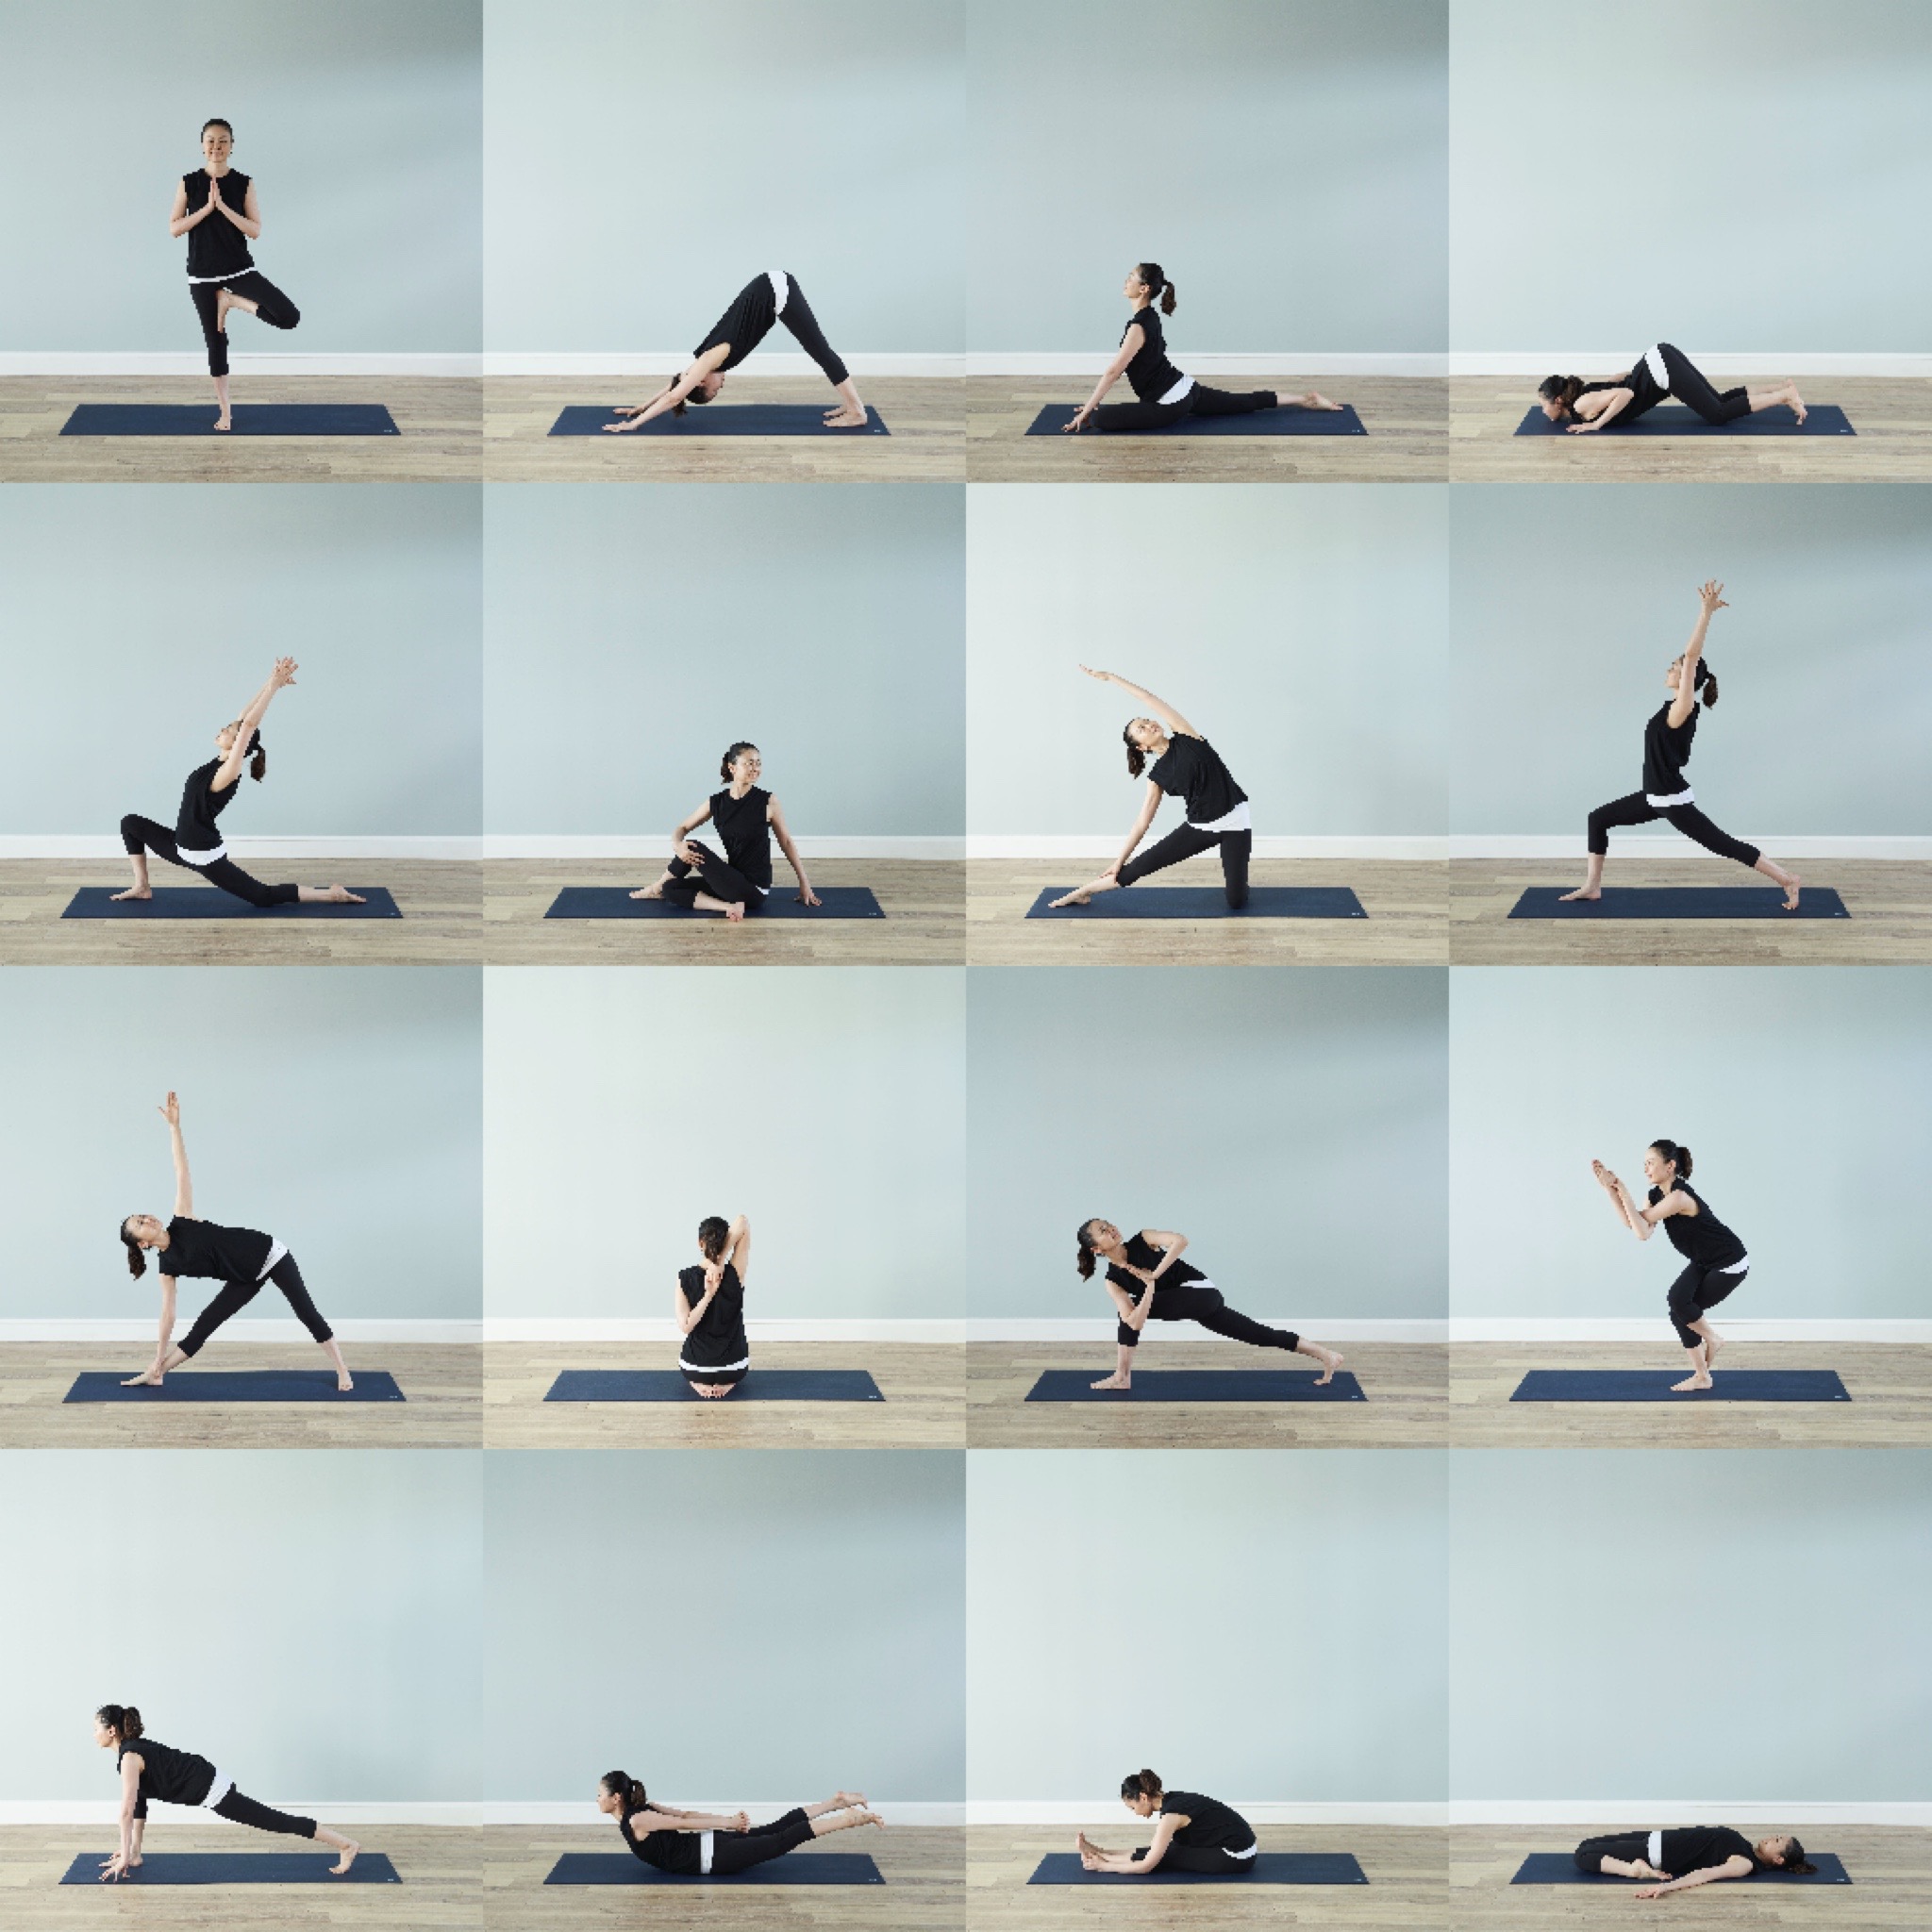 Tram Yoga Studio 世田谷 基本のポーズをゆっくり学ぶ 4回シリーズクラス